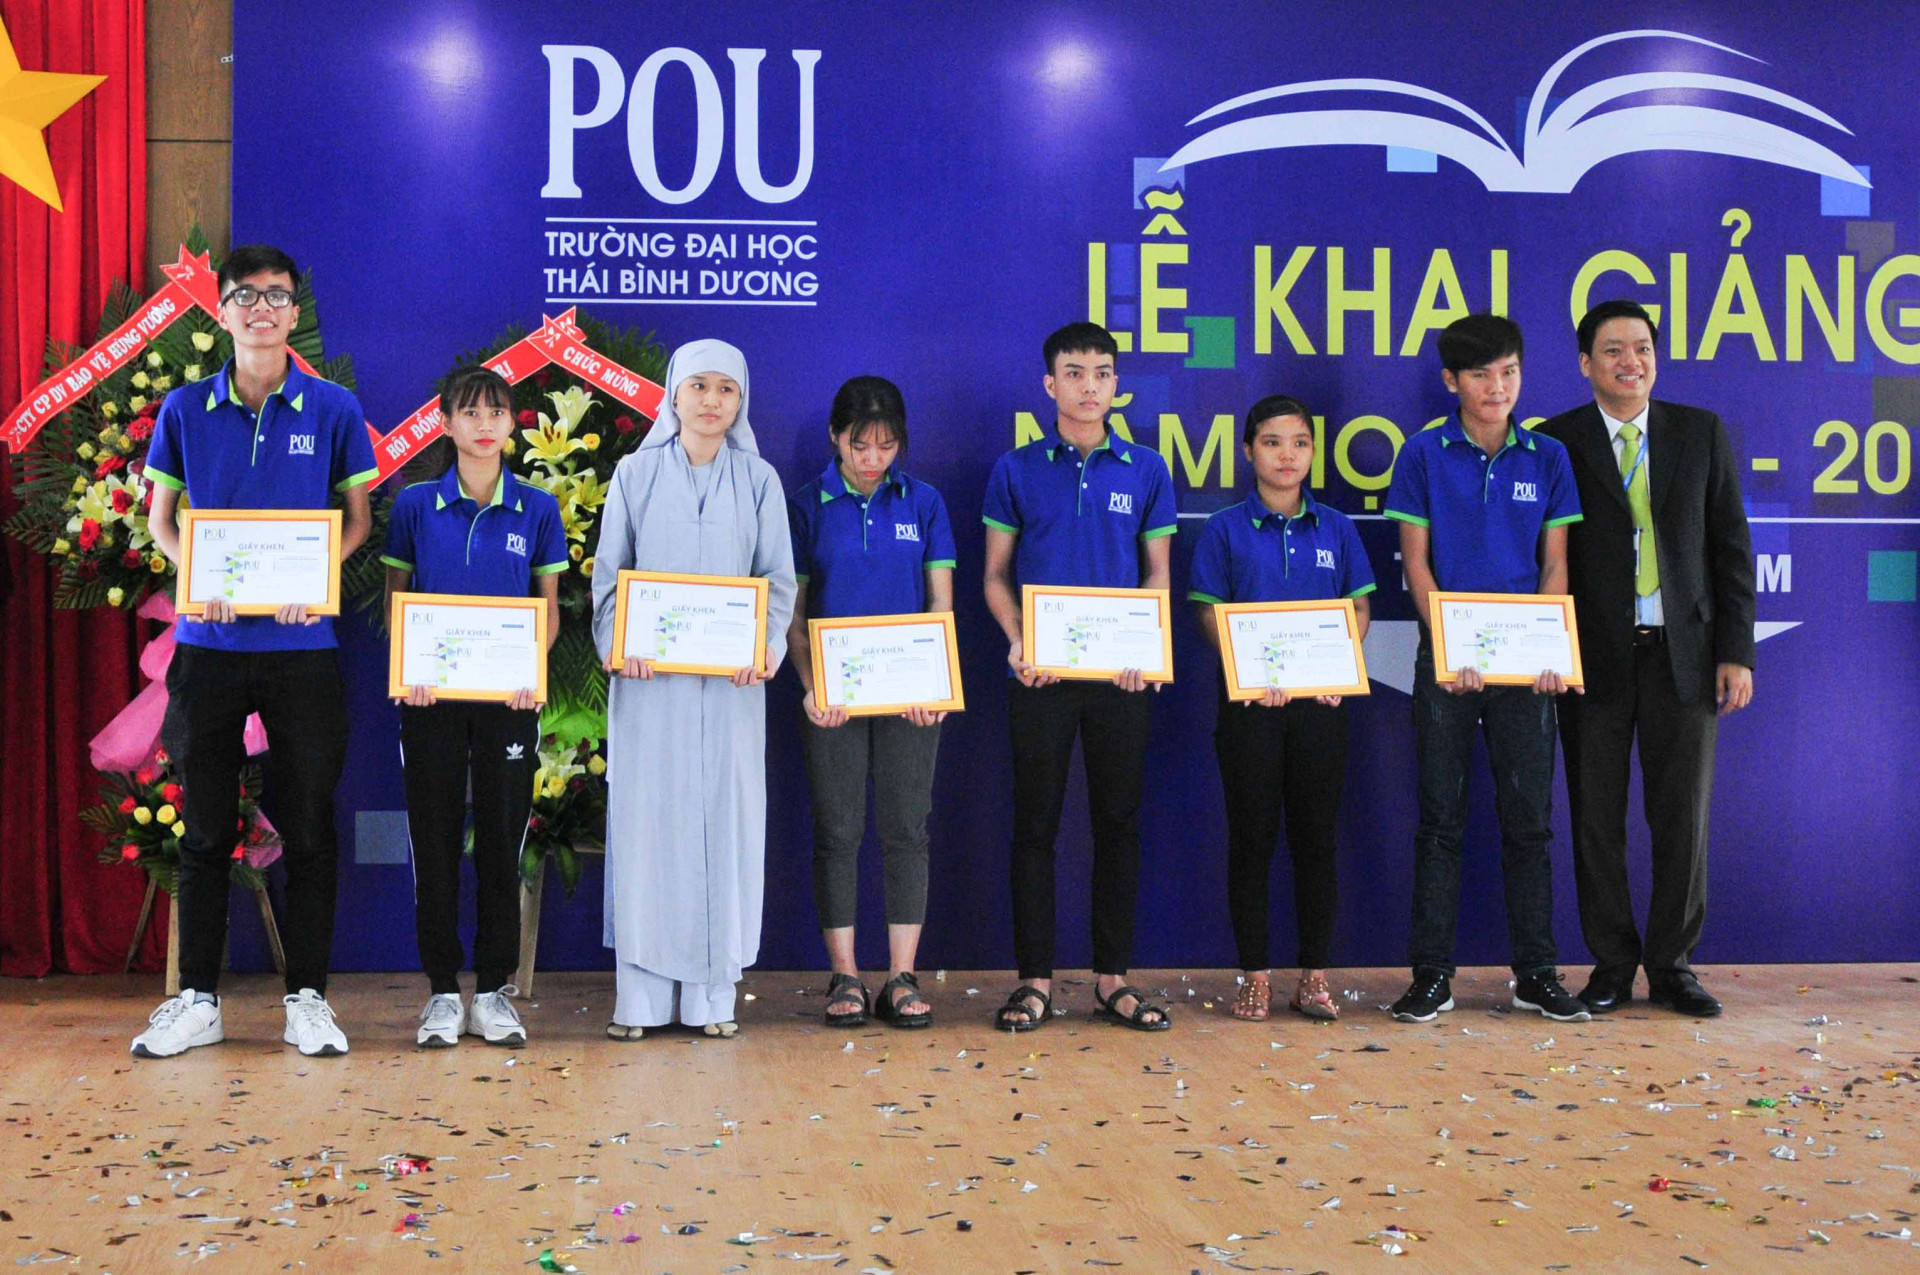 Nhà trường khen thưởng các sinh viên thủ khoa đầu vào năm học 2018-2019